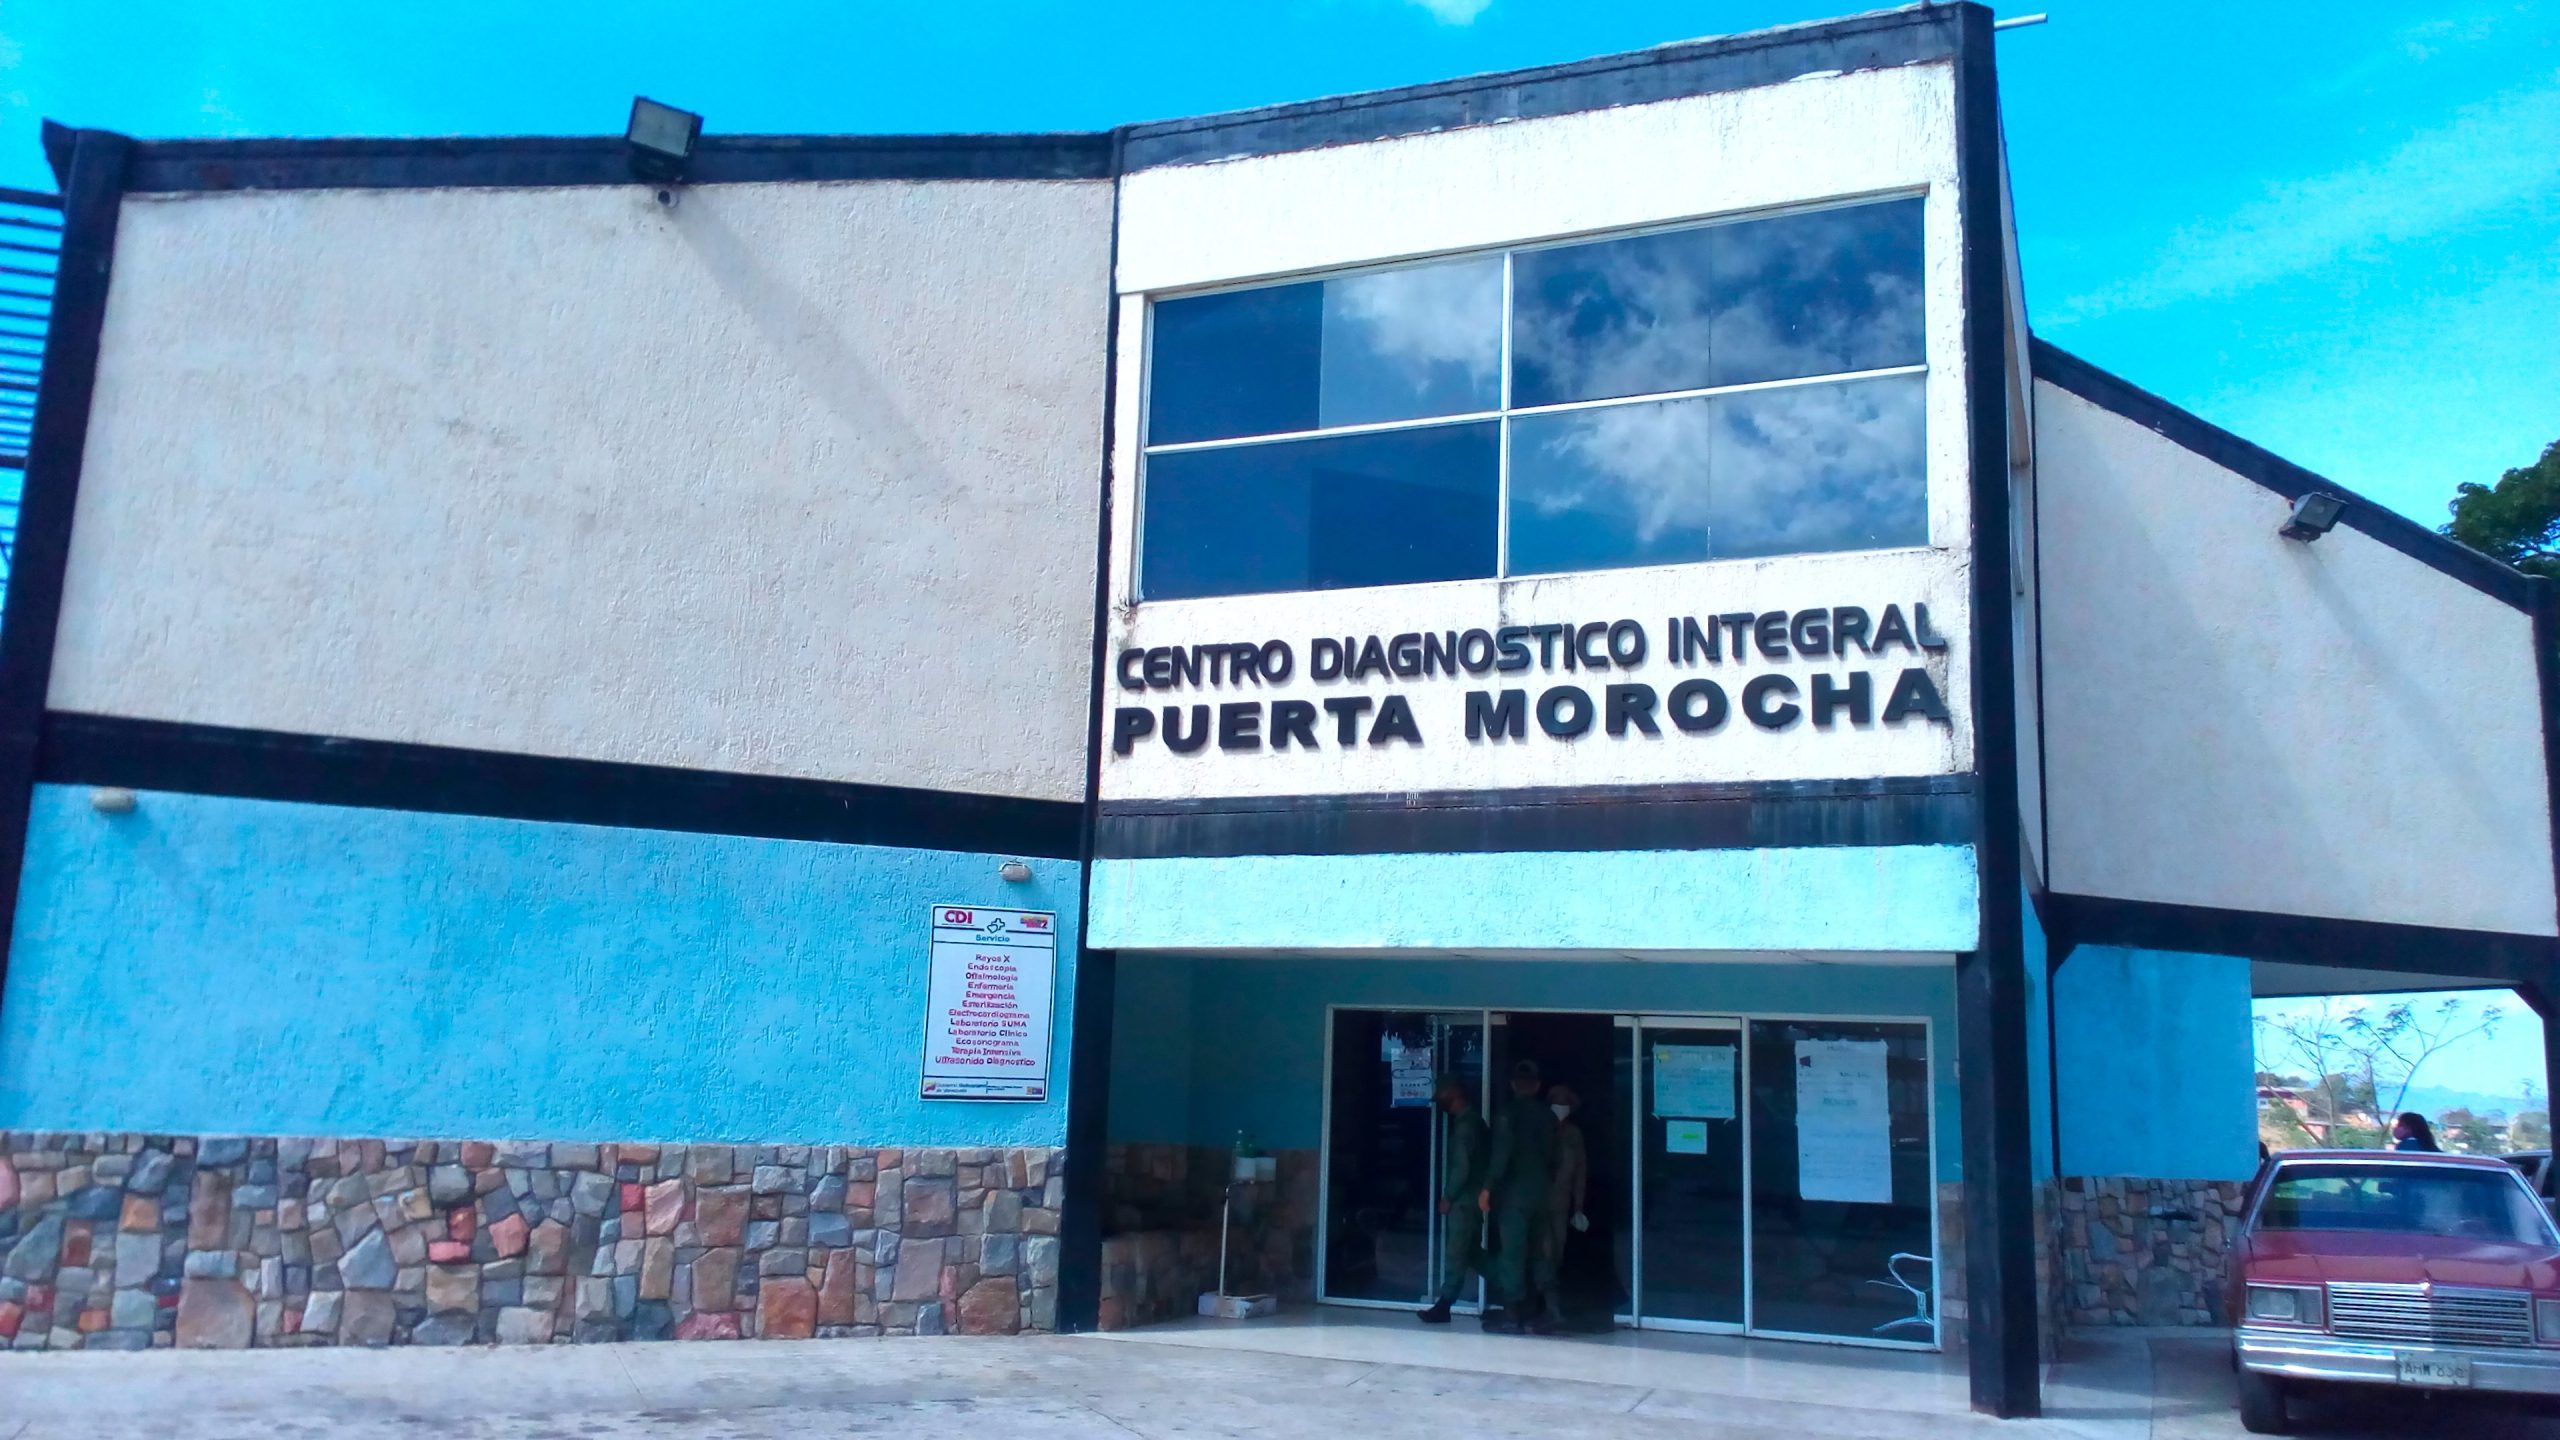 CDI de Puerta Morocha  contabiliza 880 despistajes